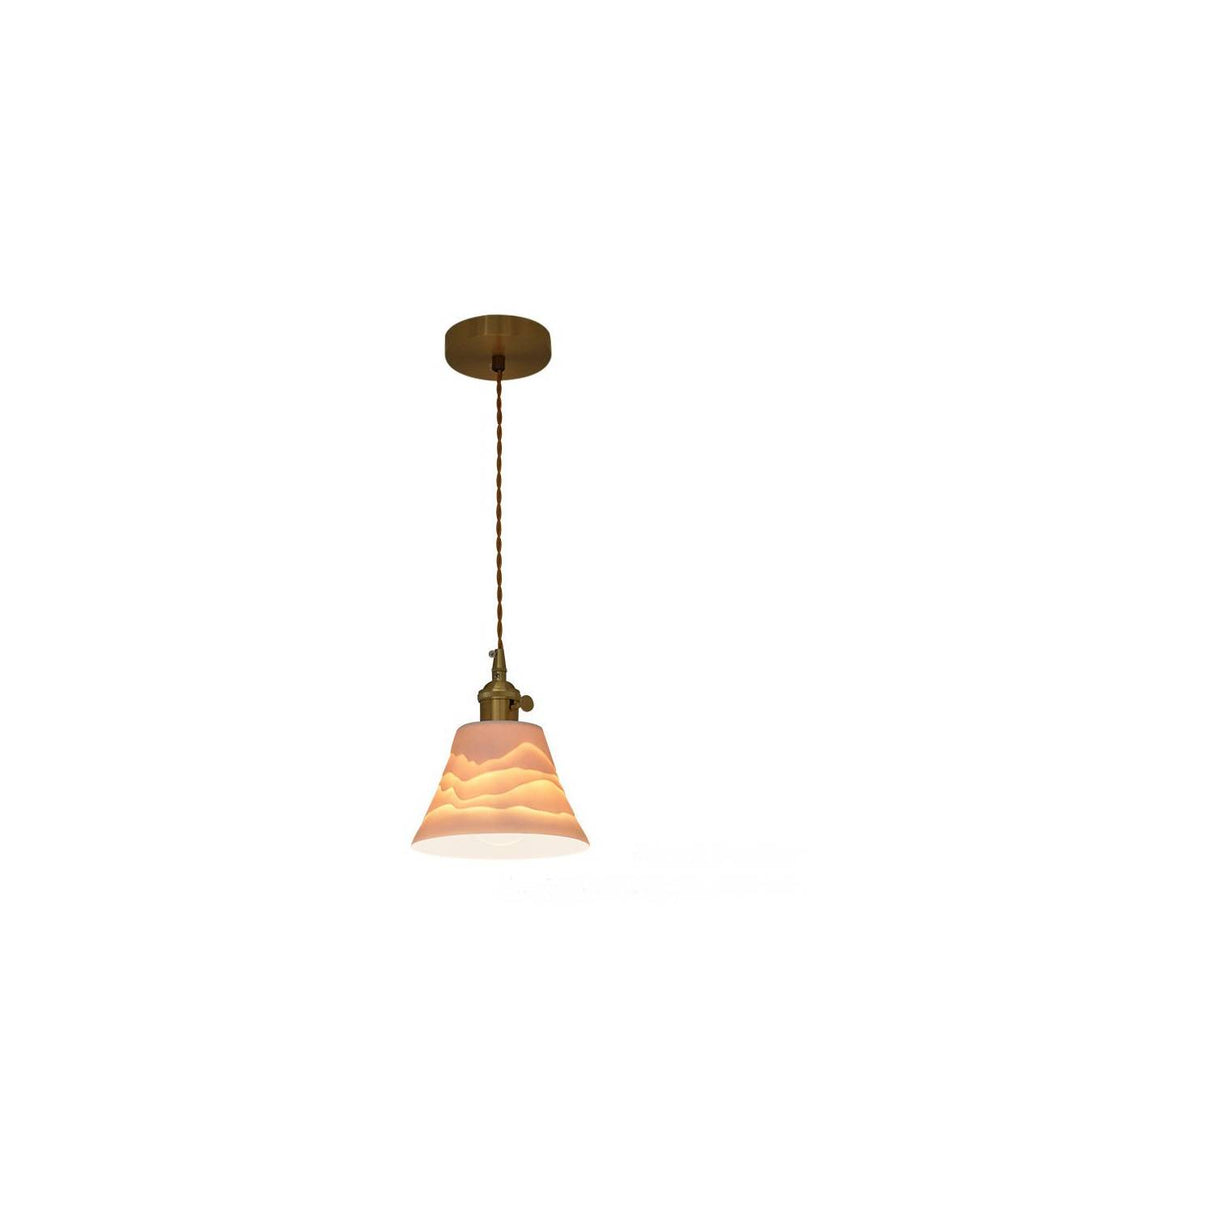 Textura cerámica pico comedor sala de estar lámpara de araña cla212 OPENBOX